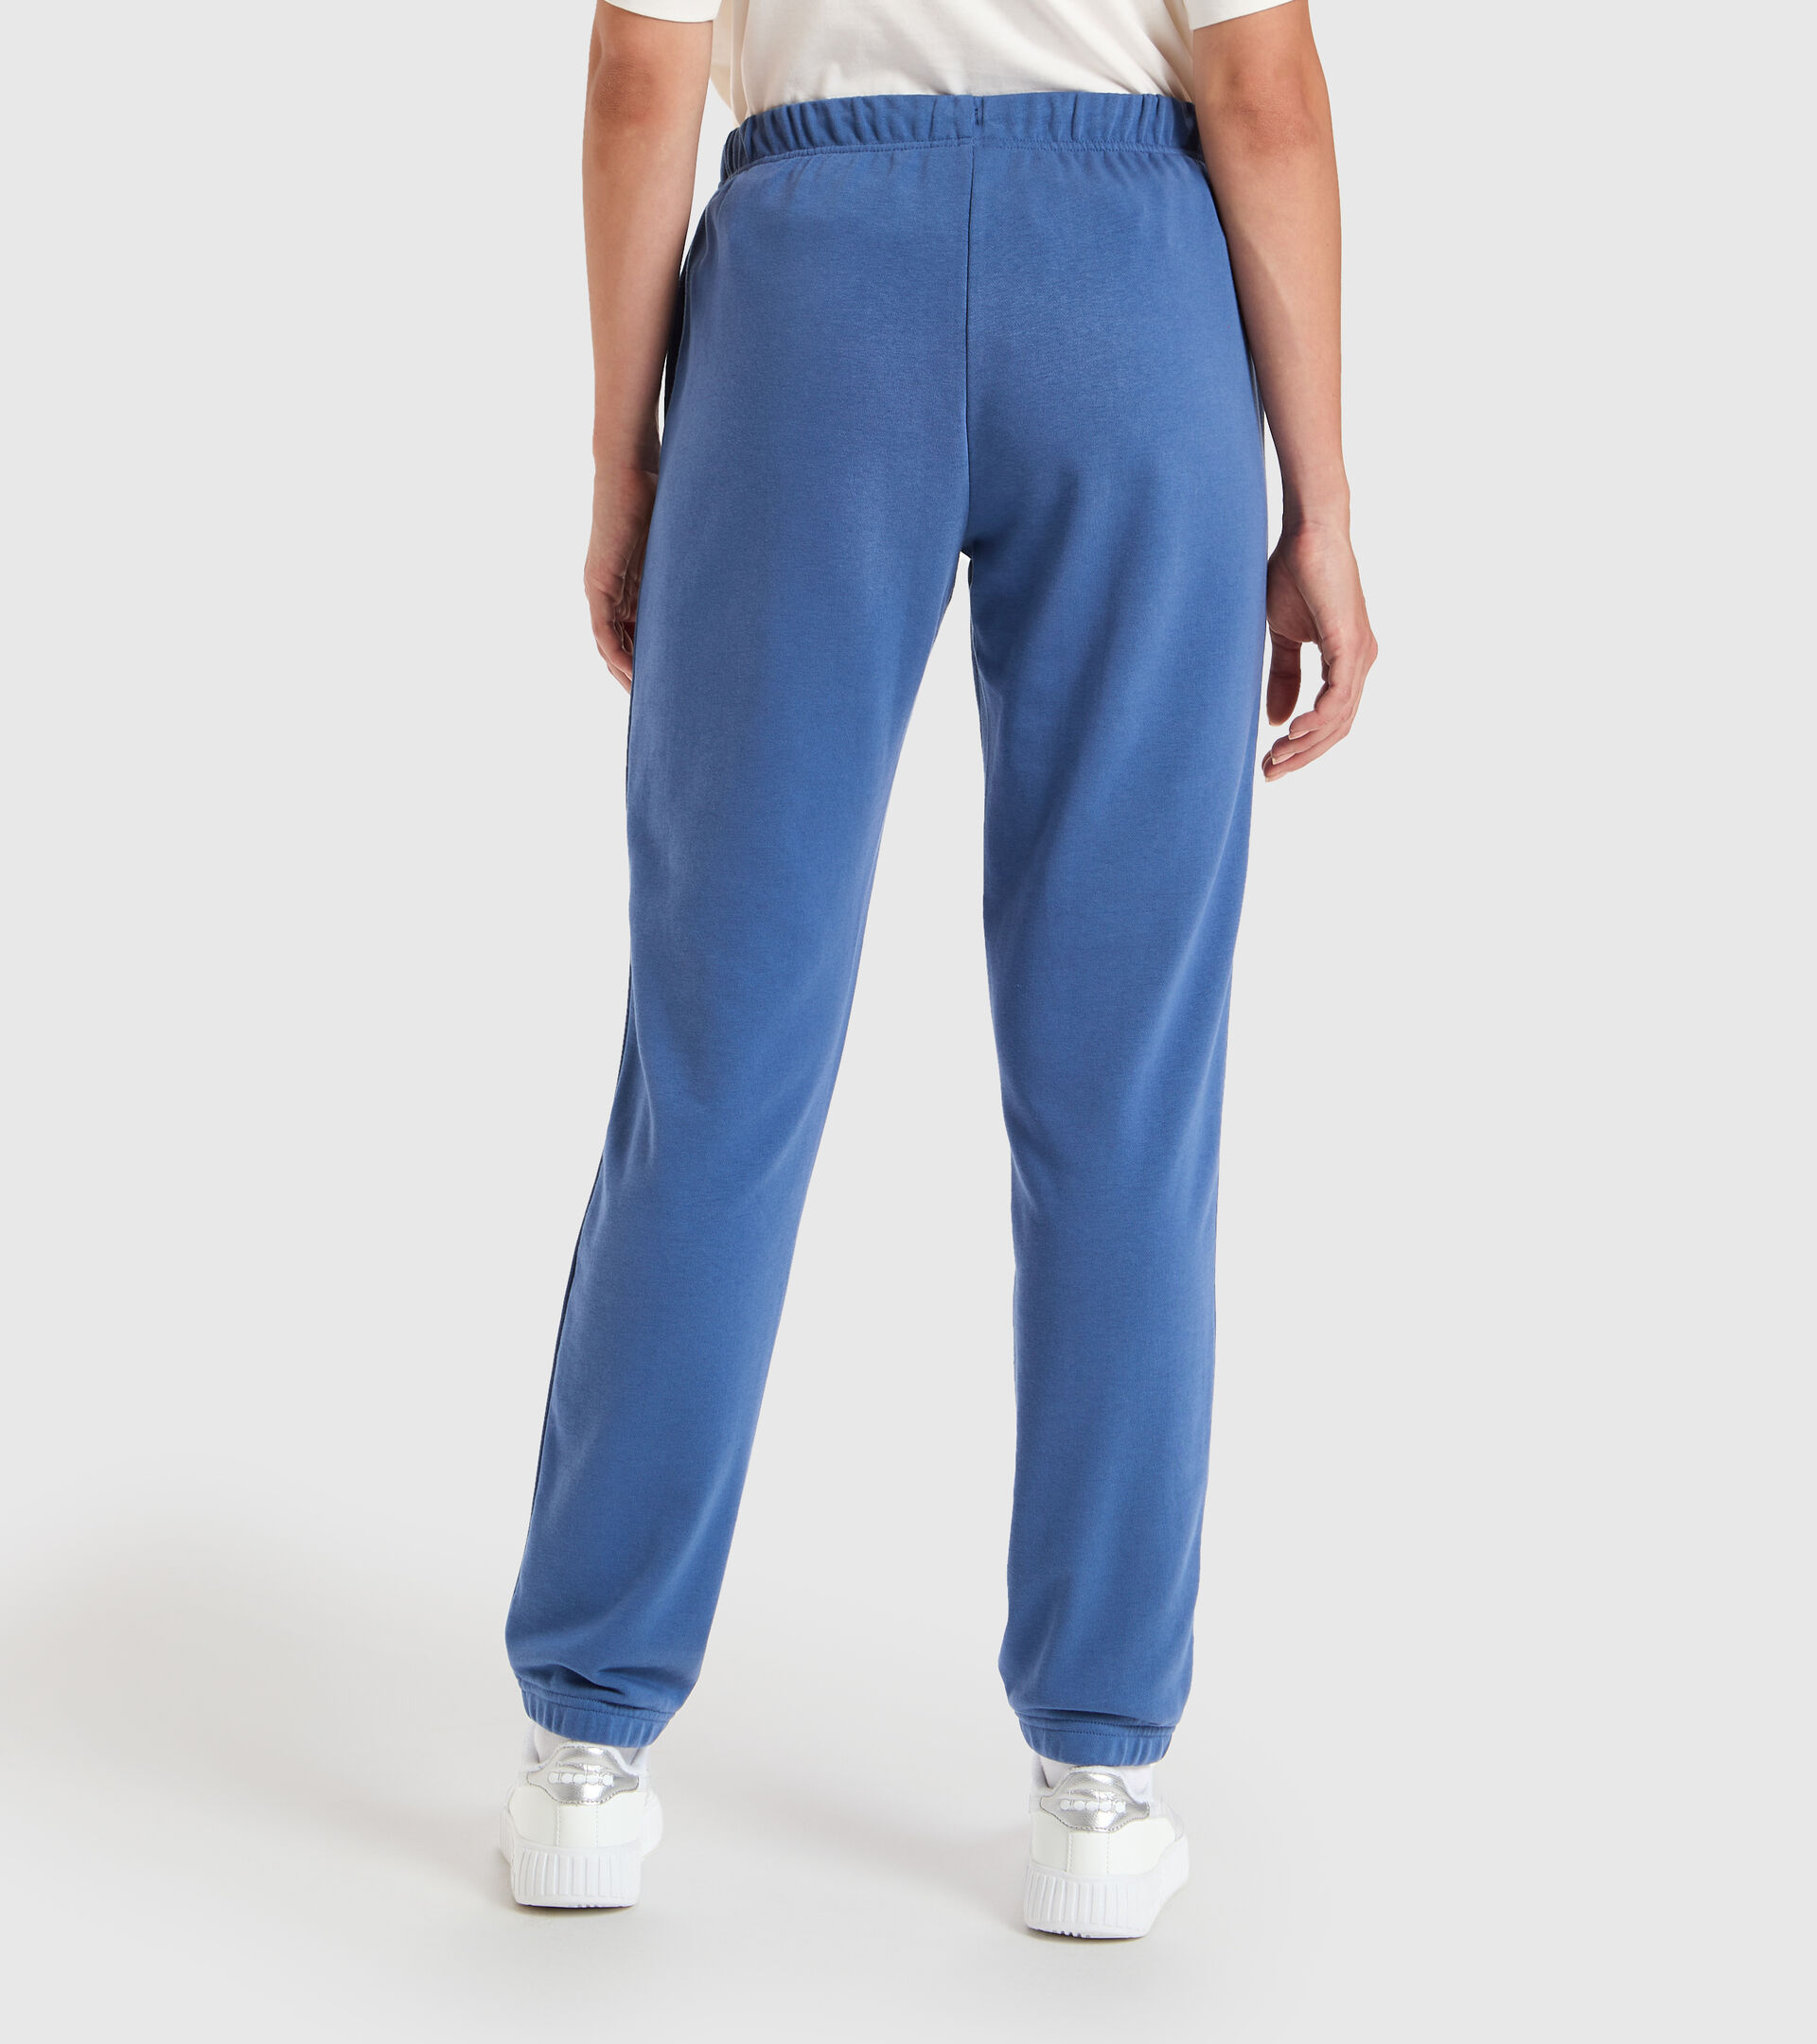 Sports trousers - Women L.PANTS CUFF CORE BIJOU BLUE - Diadora